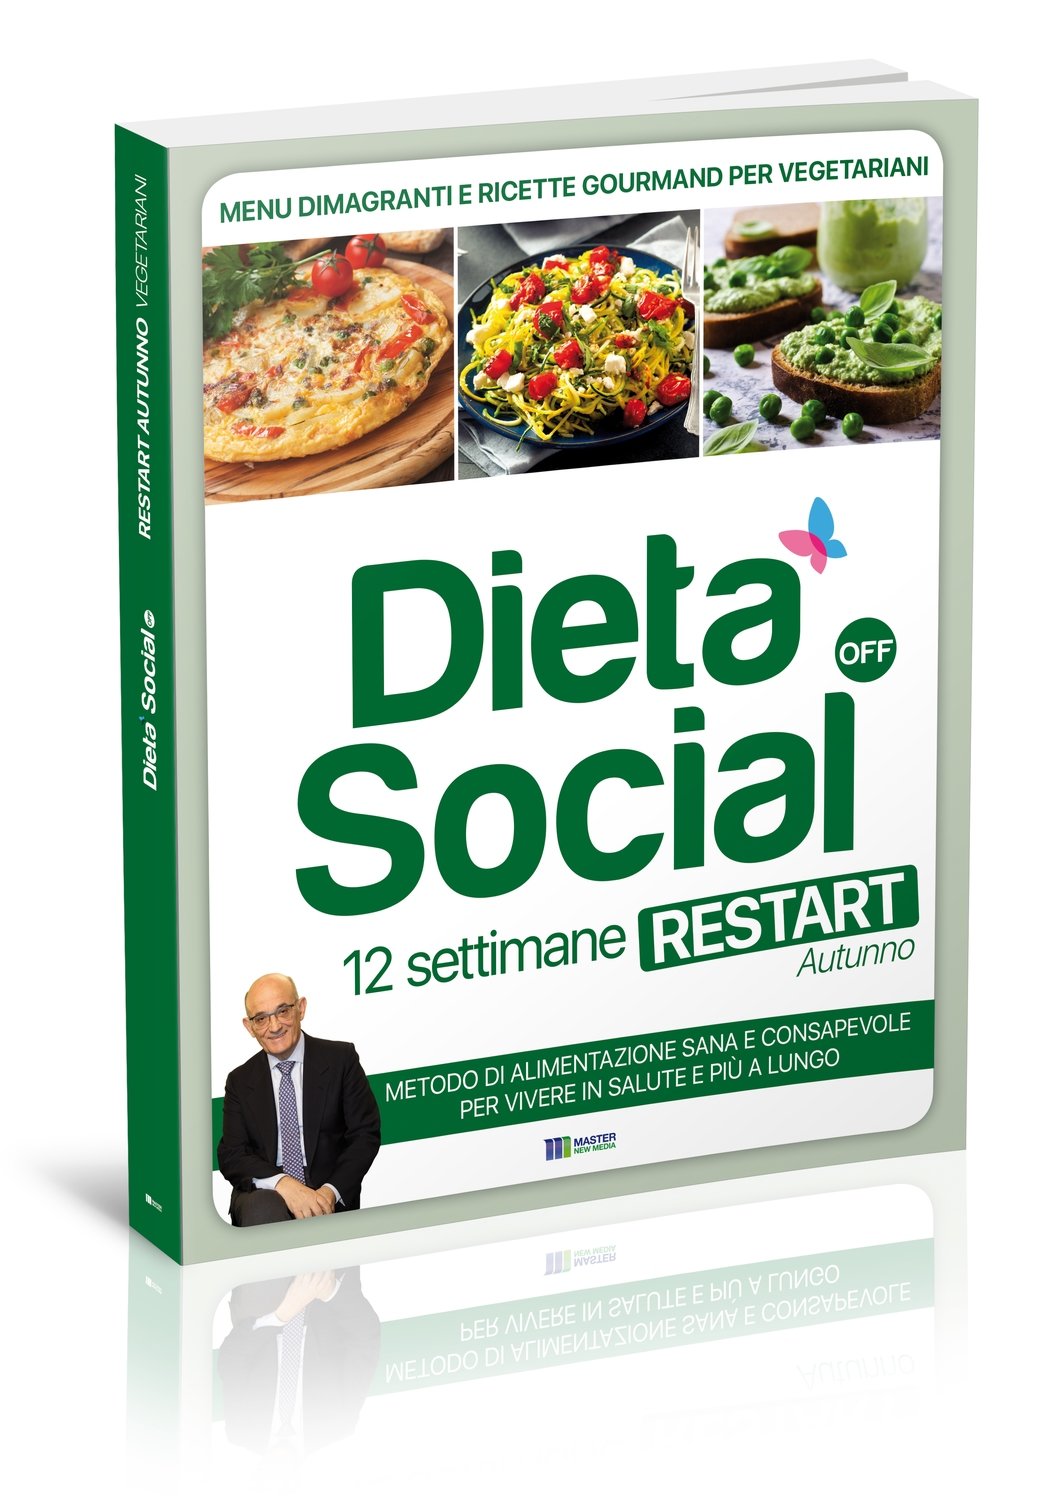 Dieta Social OFF Restart (AUTUNNO) con 3 mesi di menu e ricette - per VEGETARIANI